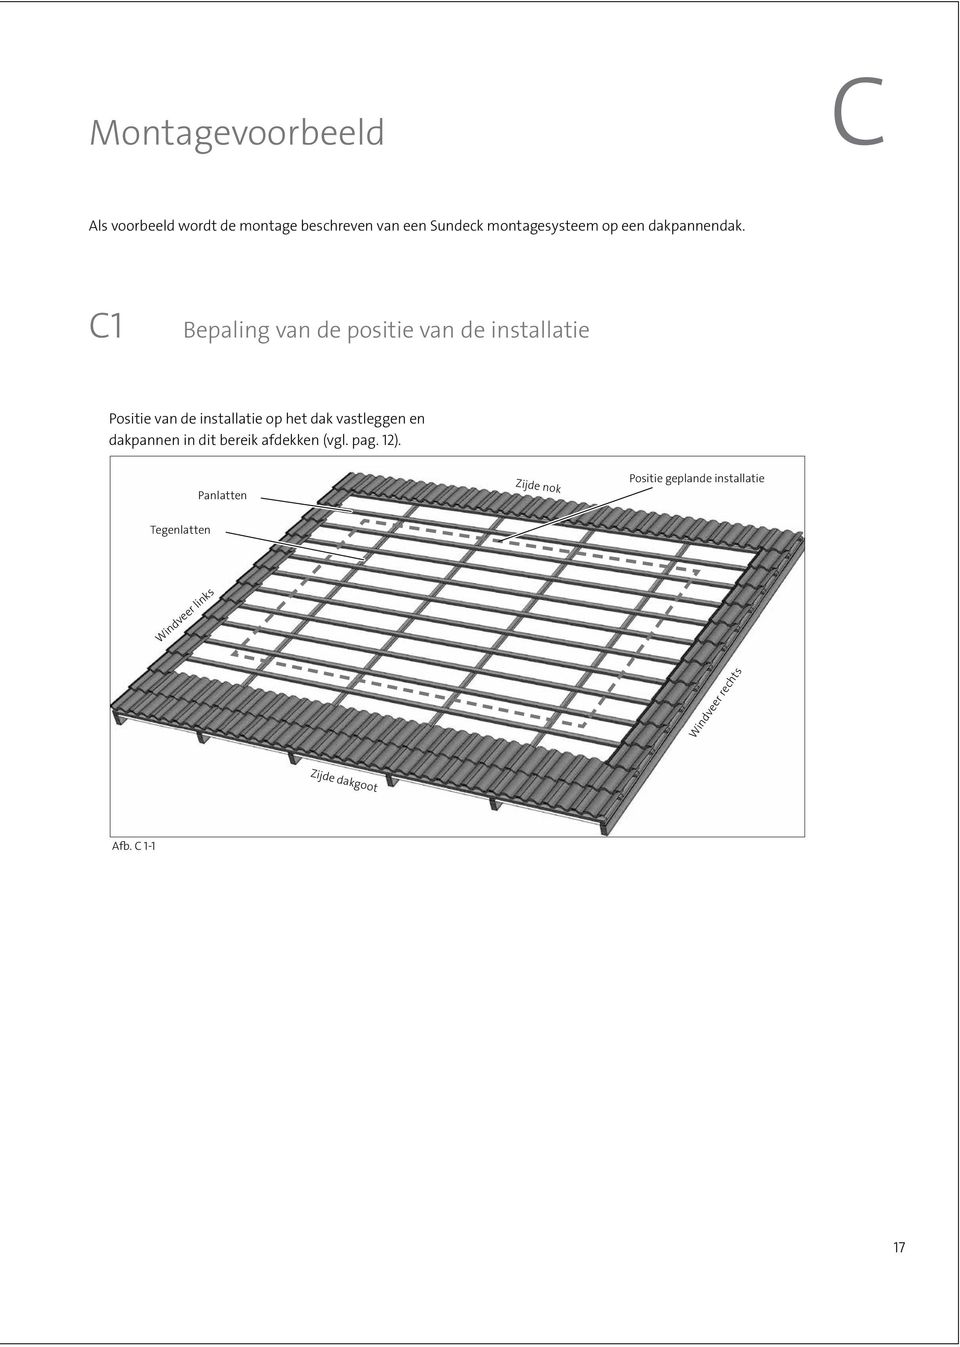 C1 Bepaling van de positie van de installatie Positie van de installatie op het dak vastleggen